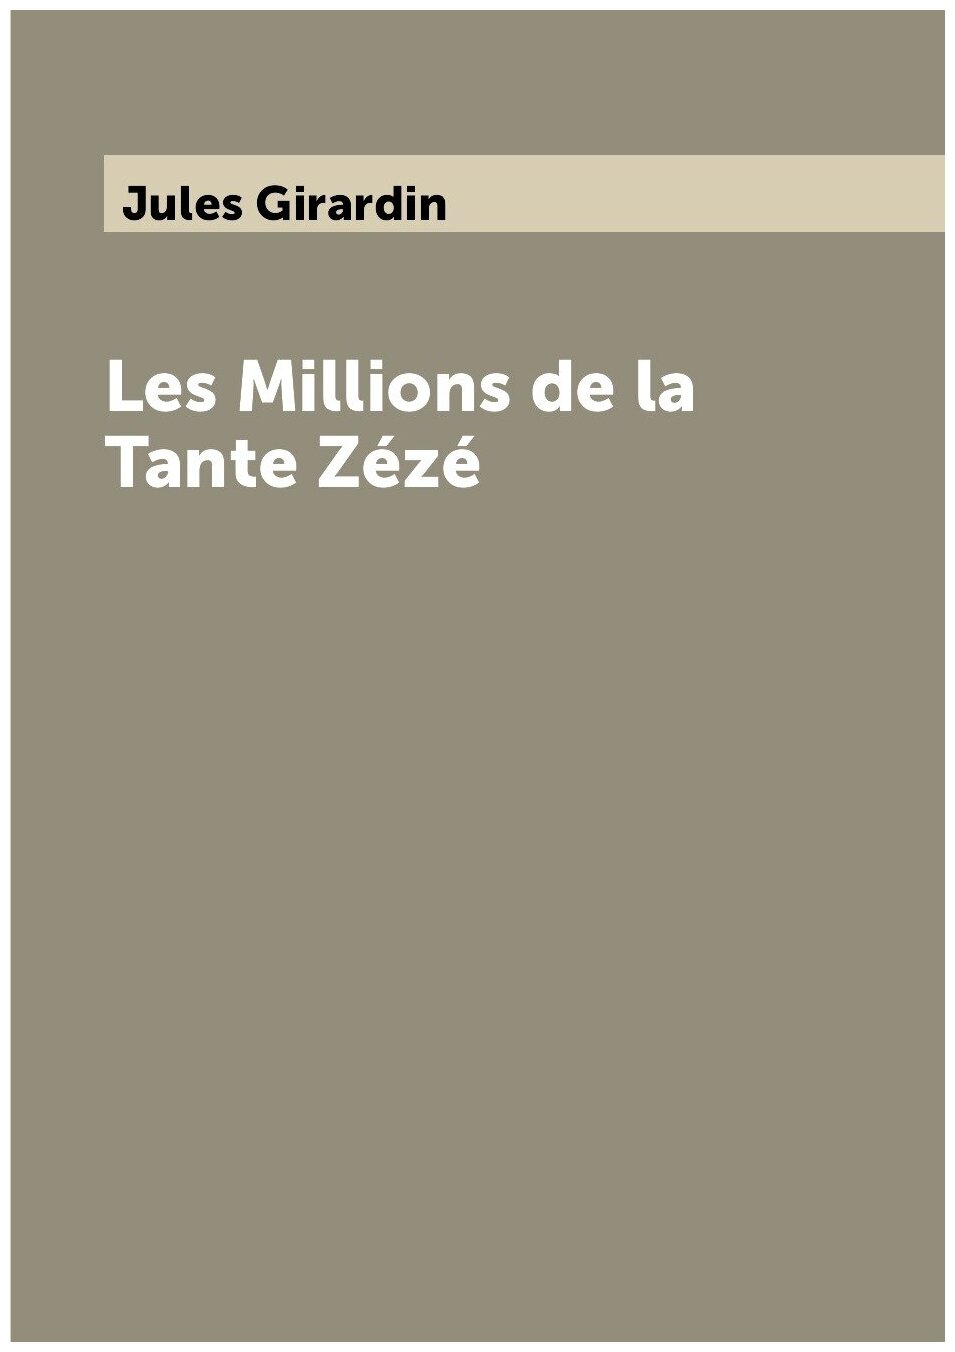 Les Millions de la Tante Zézé